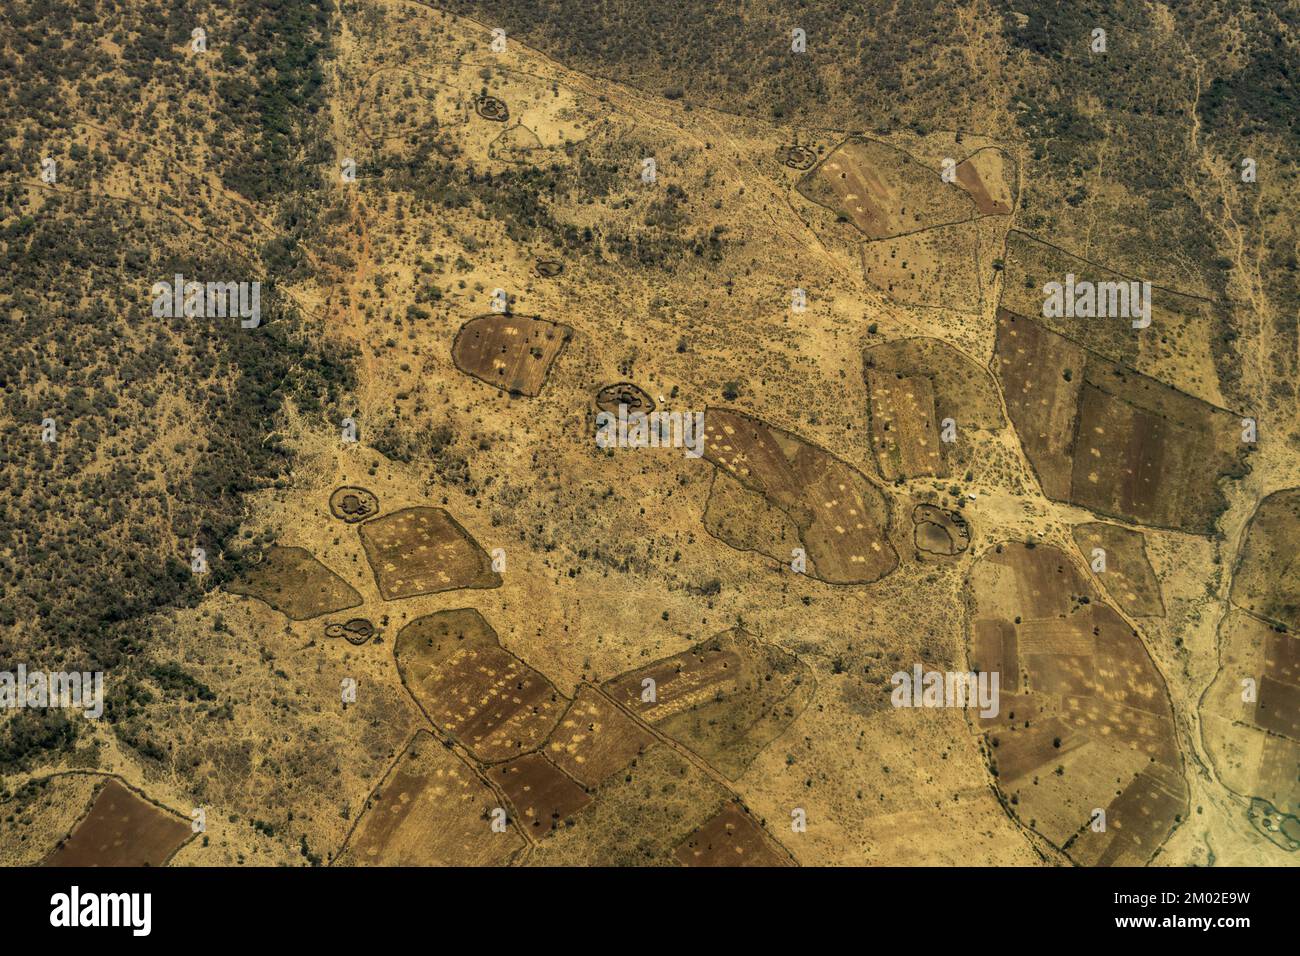 Photographie aérienne de champs et de plaines en Tanzanie Banque D'Images